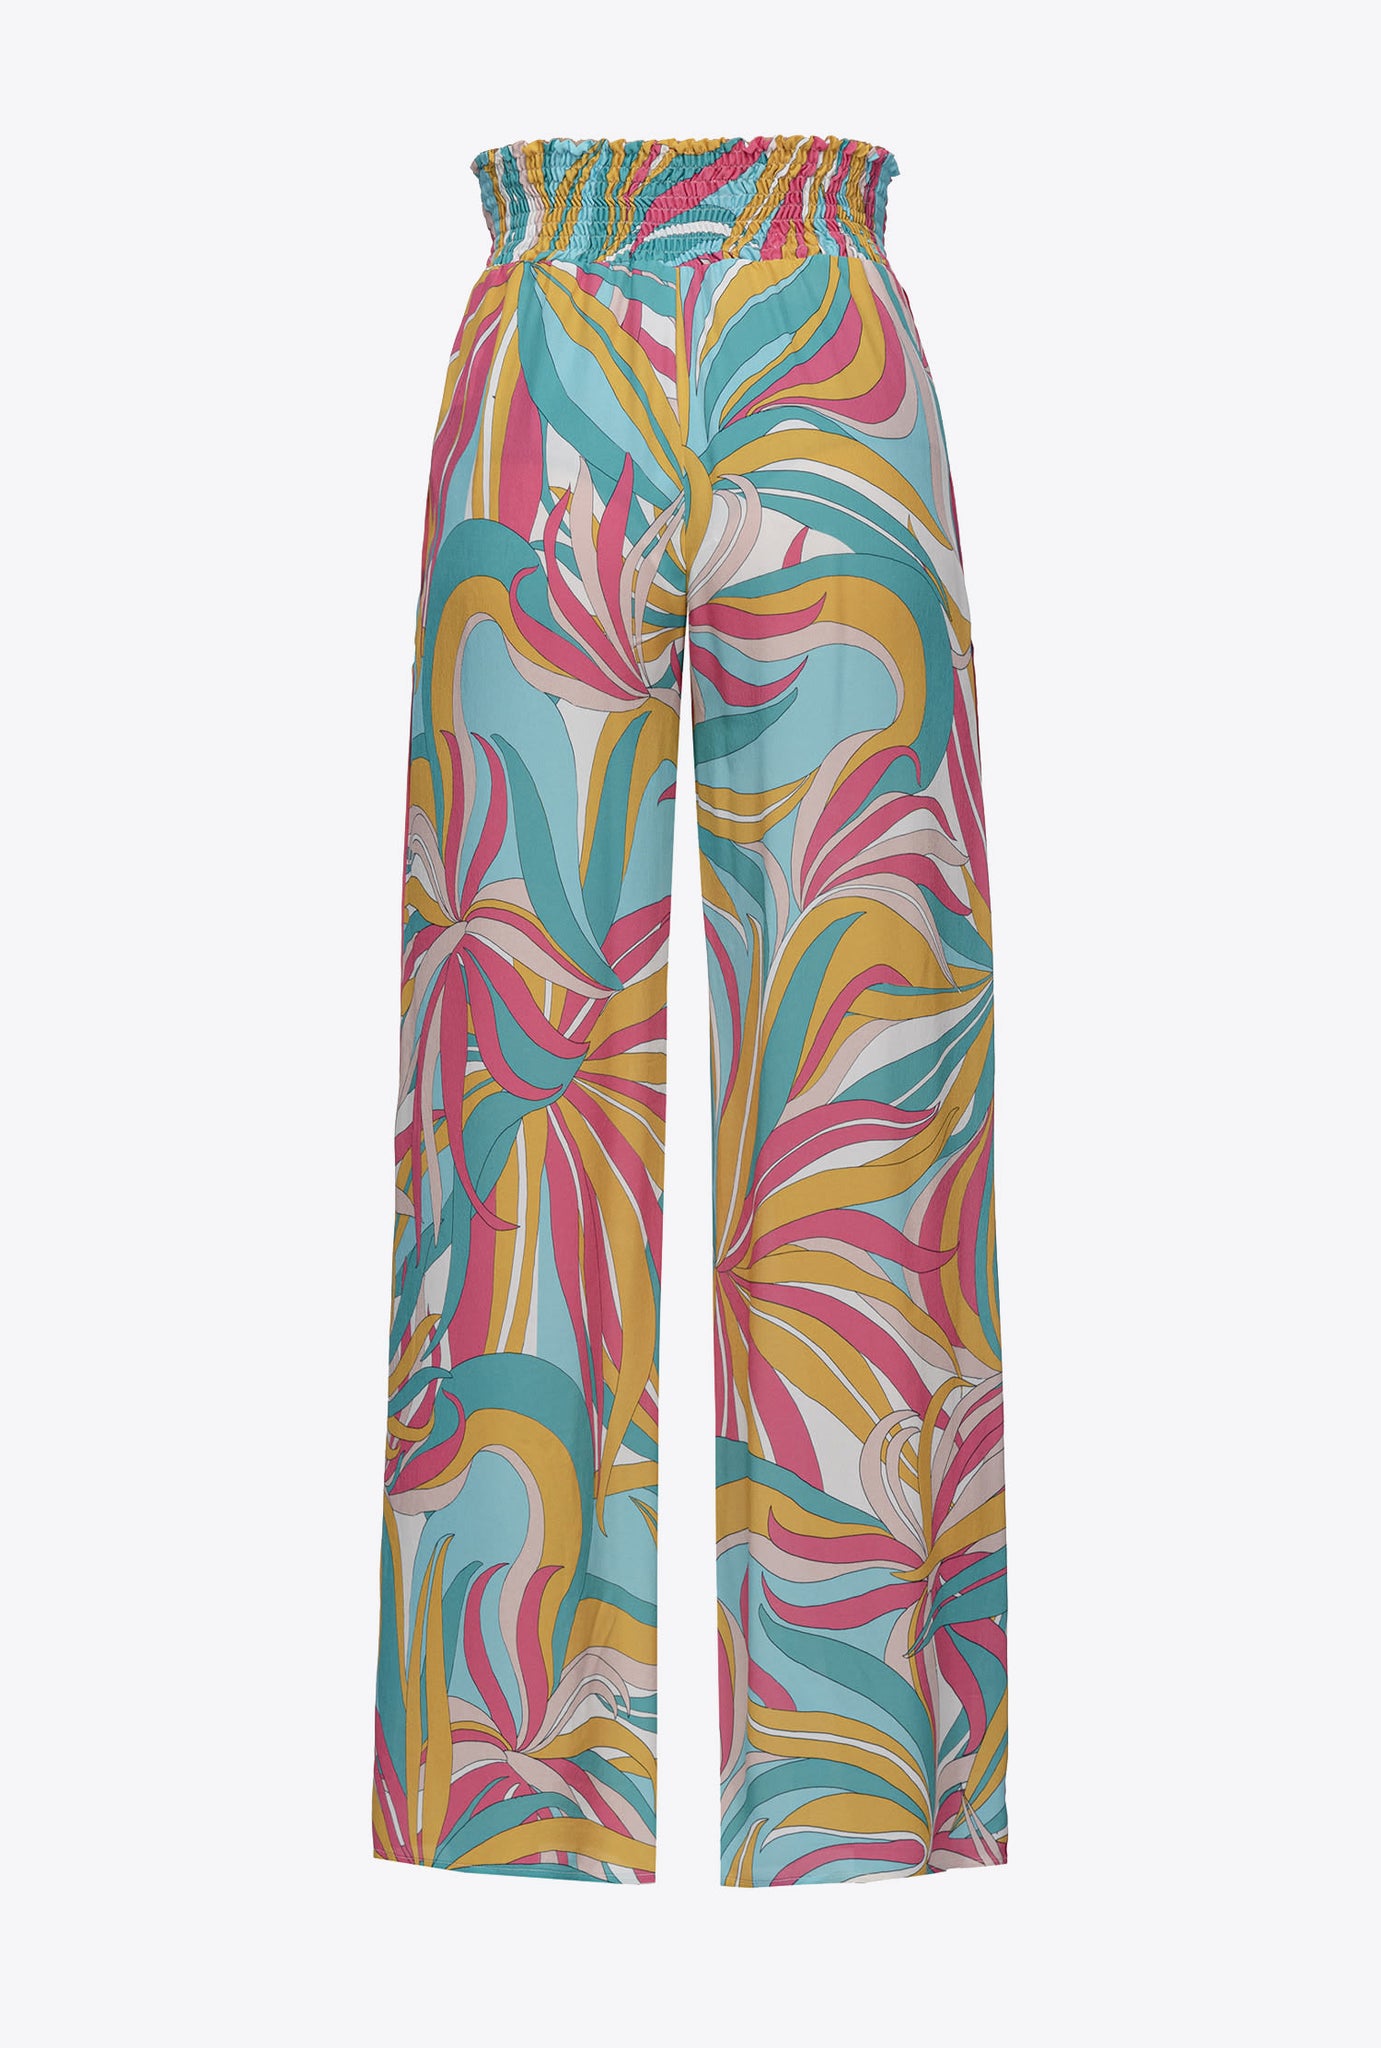 Pantalone con Fantasia Pinko / Multicolor - Ideal Moda